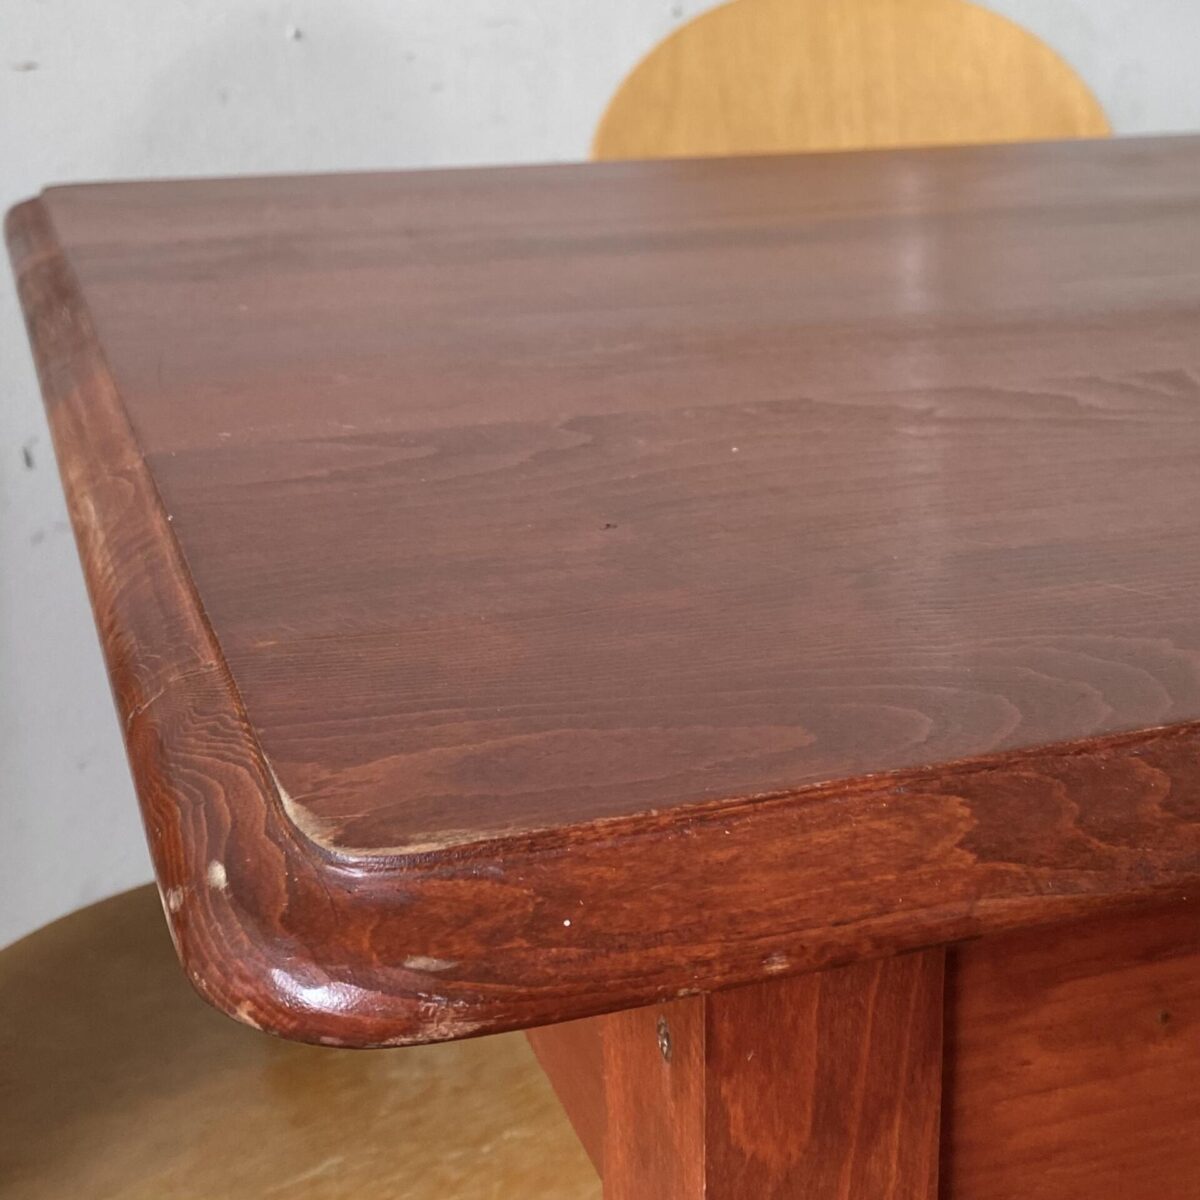 Deuxieme.shop. Buchenholz Schreibtisch mit Schublade aus Vollholz. 120x74cm Höhe 76cm. Der Tisch ist in stabilem Zustand, rotbraun gebeizt und lackiert. Die Stapelstühle sind ebenfalls verfügbar, 4er Set 120.- Von Danerka made in Dänemark. 